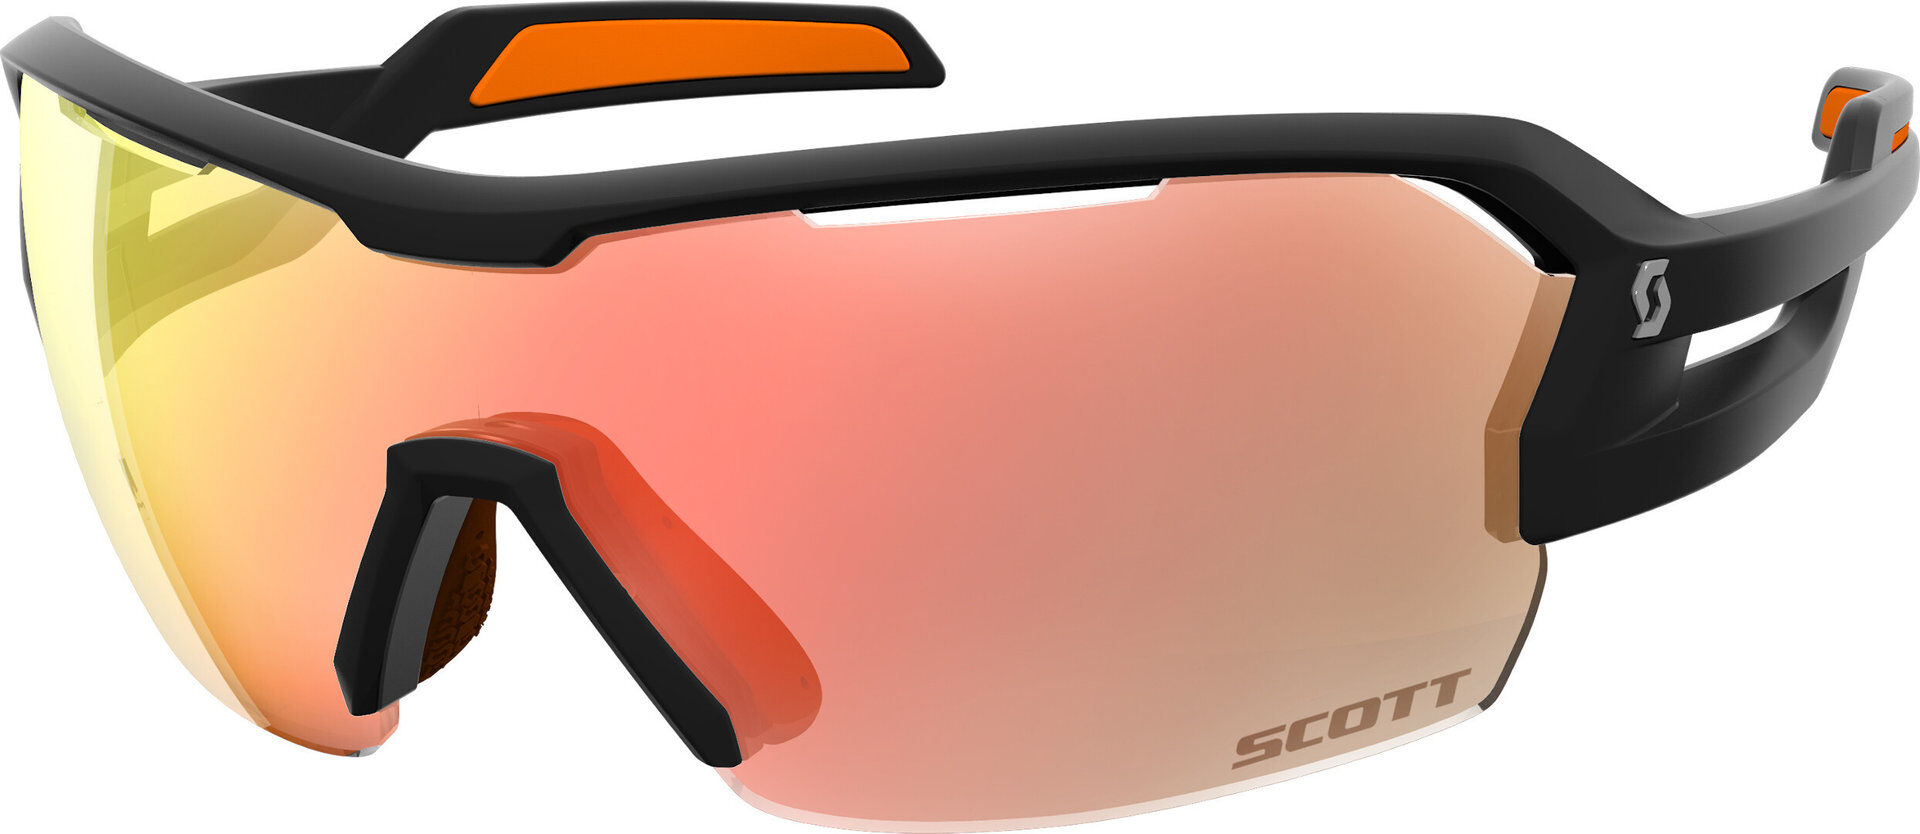 Scott Spur occhiali da sole Nero Arancione unica taglia